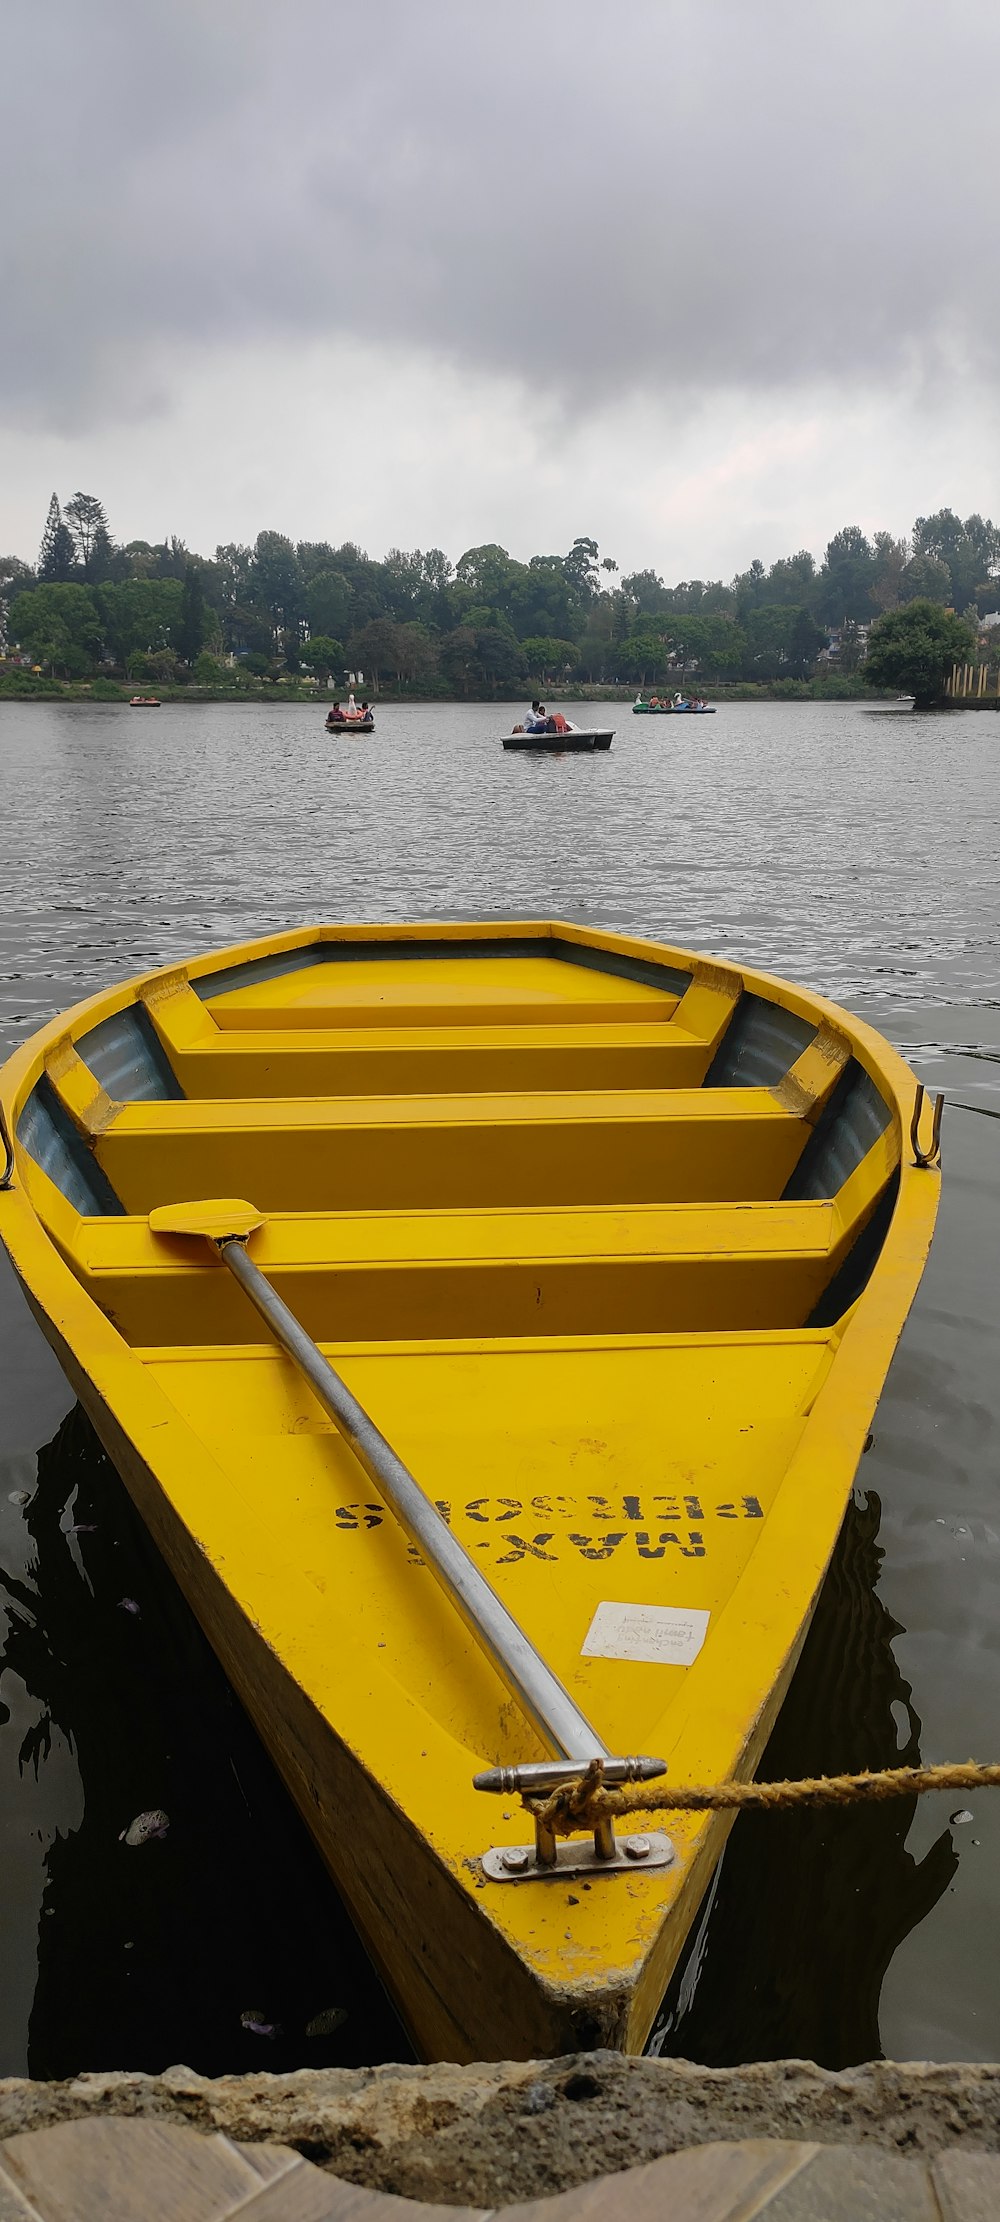 Una piccola barca gialla che galleggia sulla cima di un lago